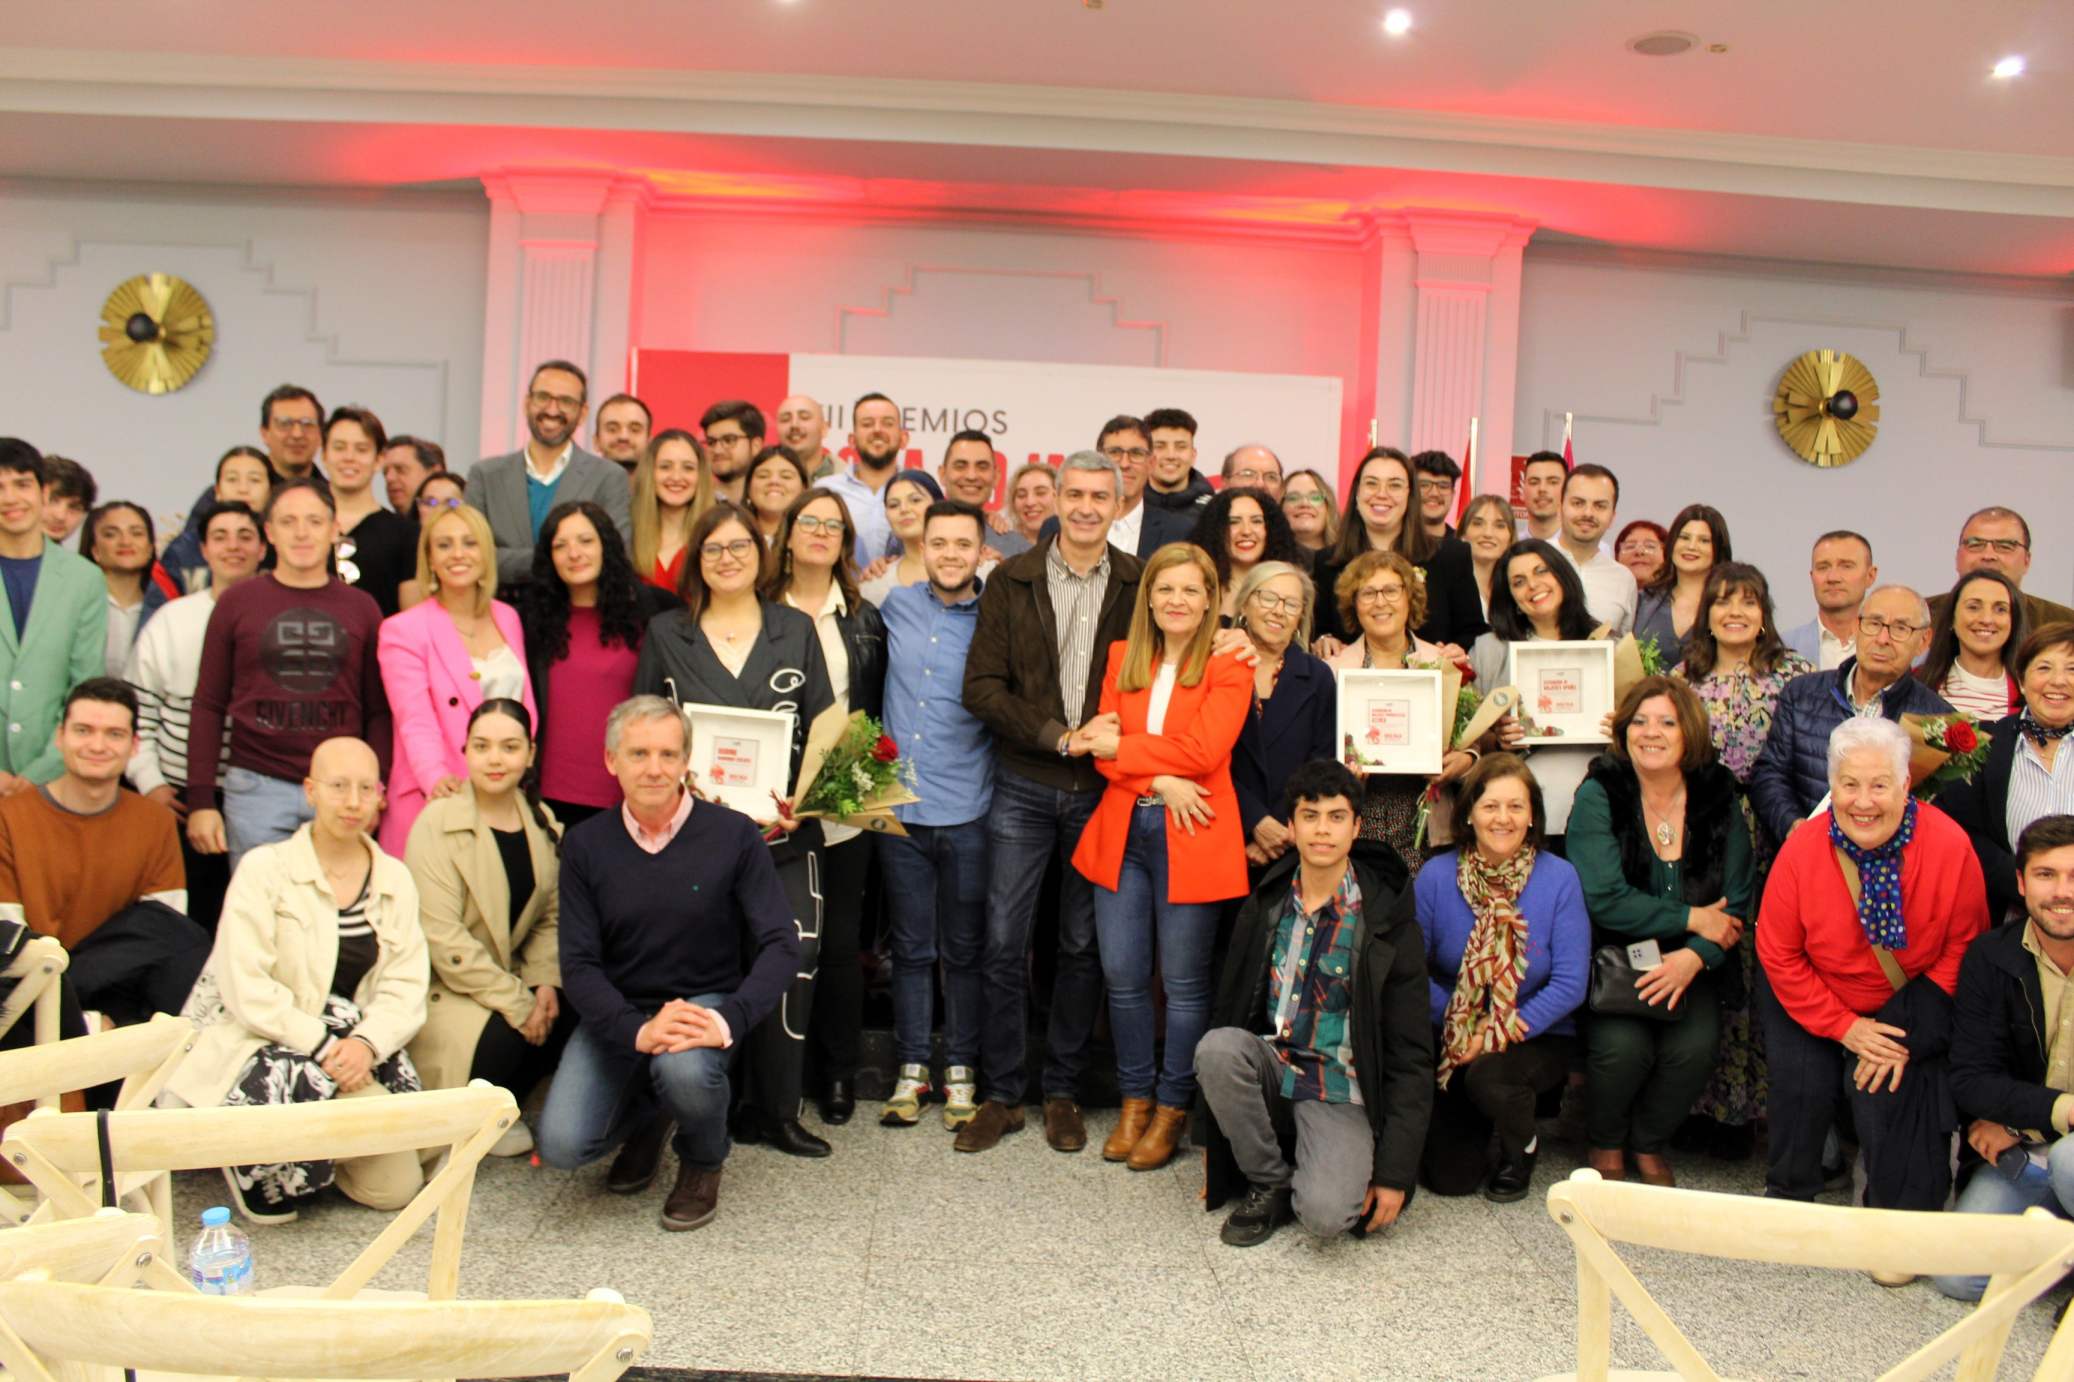 Juventudes Socialistas de Castilla-La Mancha entrega los Premios “Rosa Roja” a mujeres que destacan por su trayectoria feminista.